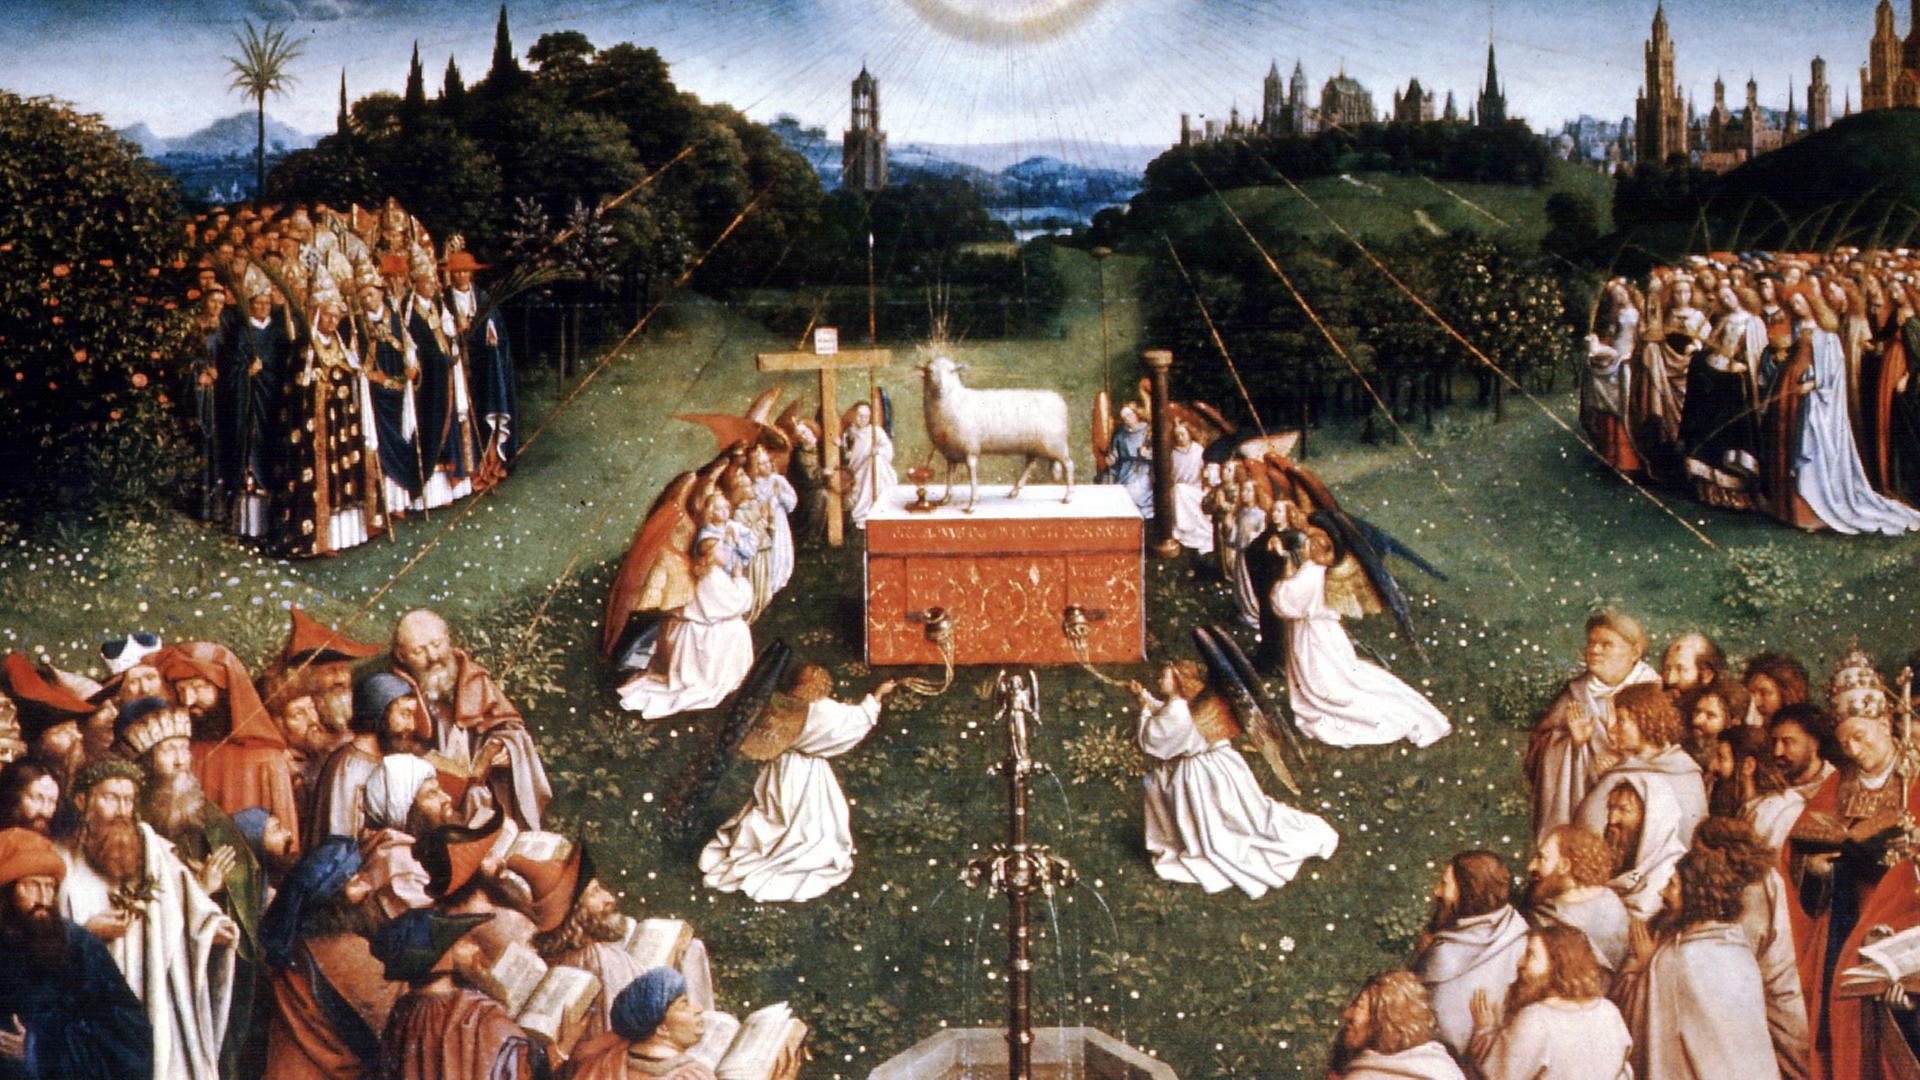 Der Mittelaltar im Genter Altar von Hubert und Jan van Eyck (Ausschnitt) zeigt die "Anbetung des Lammes" als Symbol für das Paradies in einer Frühlingslandschaft. Das Gemälde entstand um 1432.